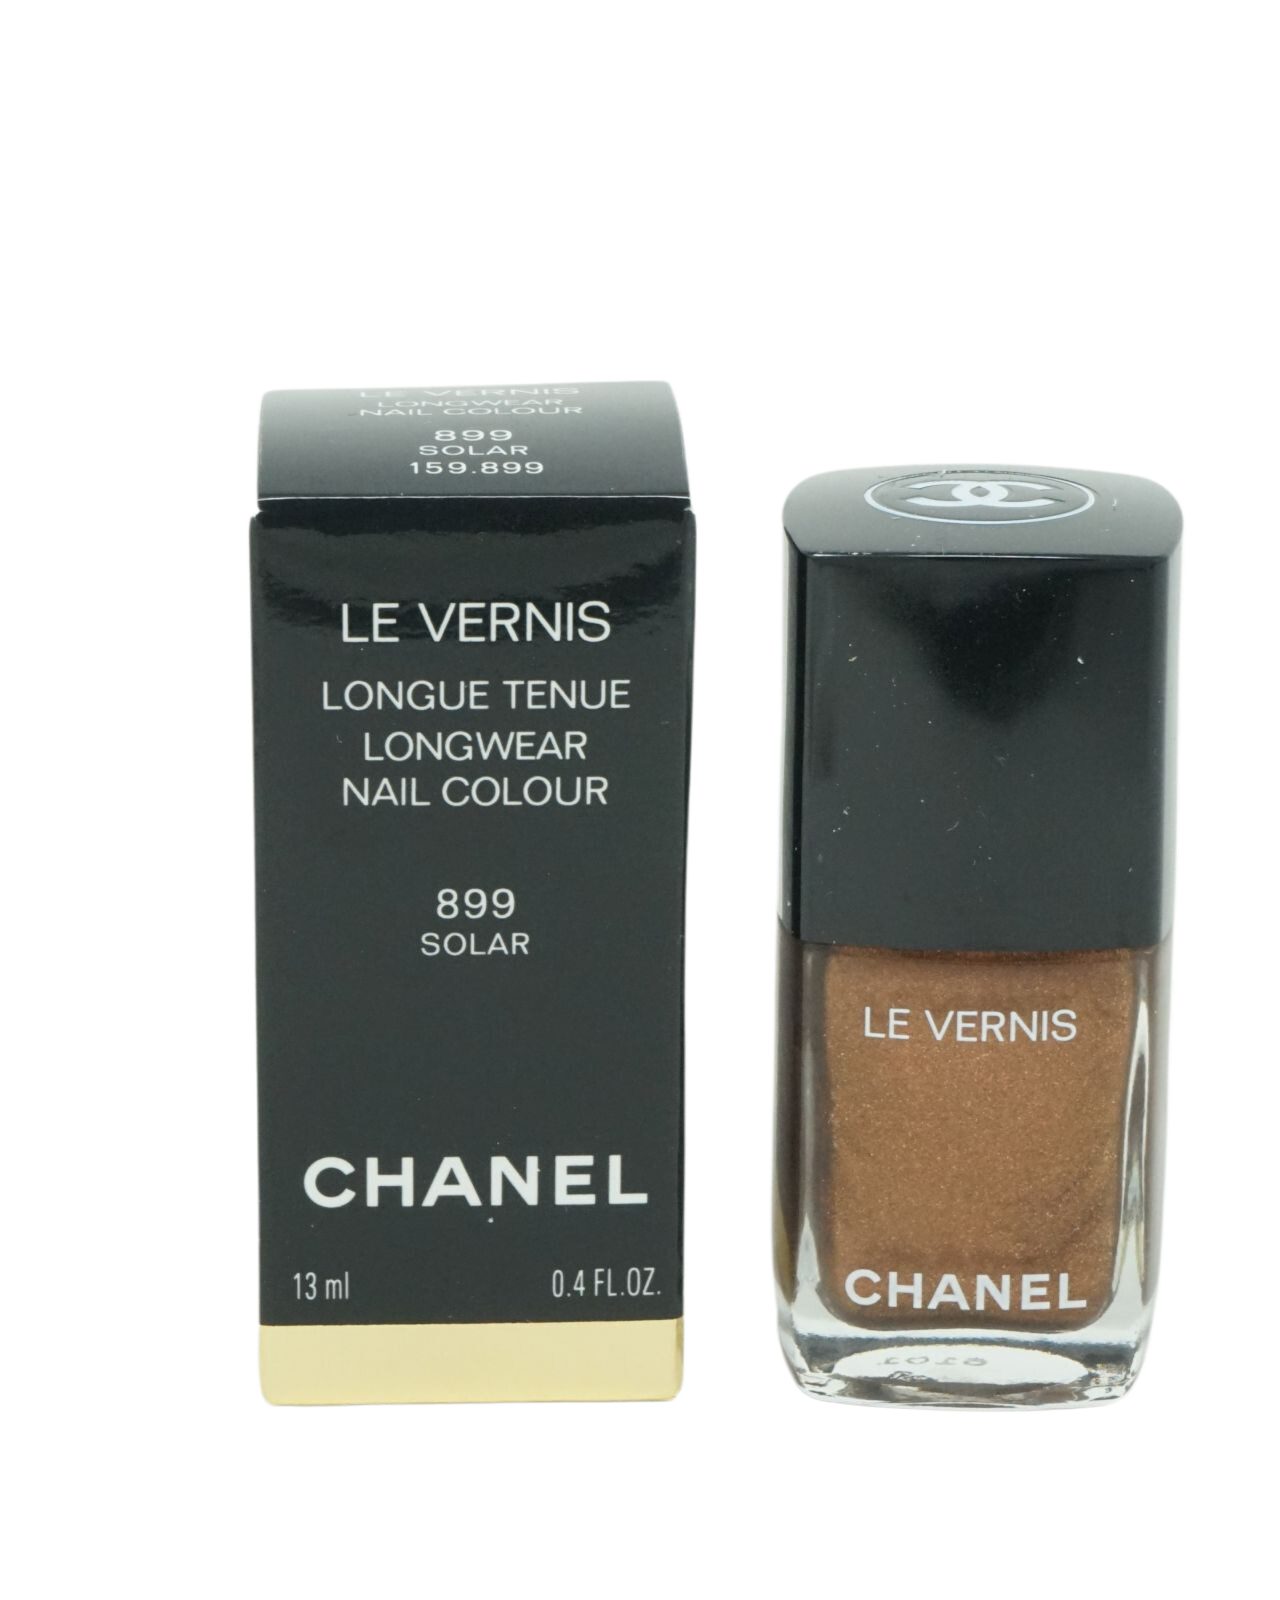 CHANEL Nagellack Chanel Le Vernis Longwear Nagellack 13ml 899 Solar